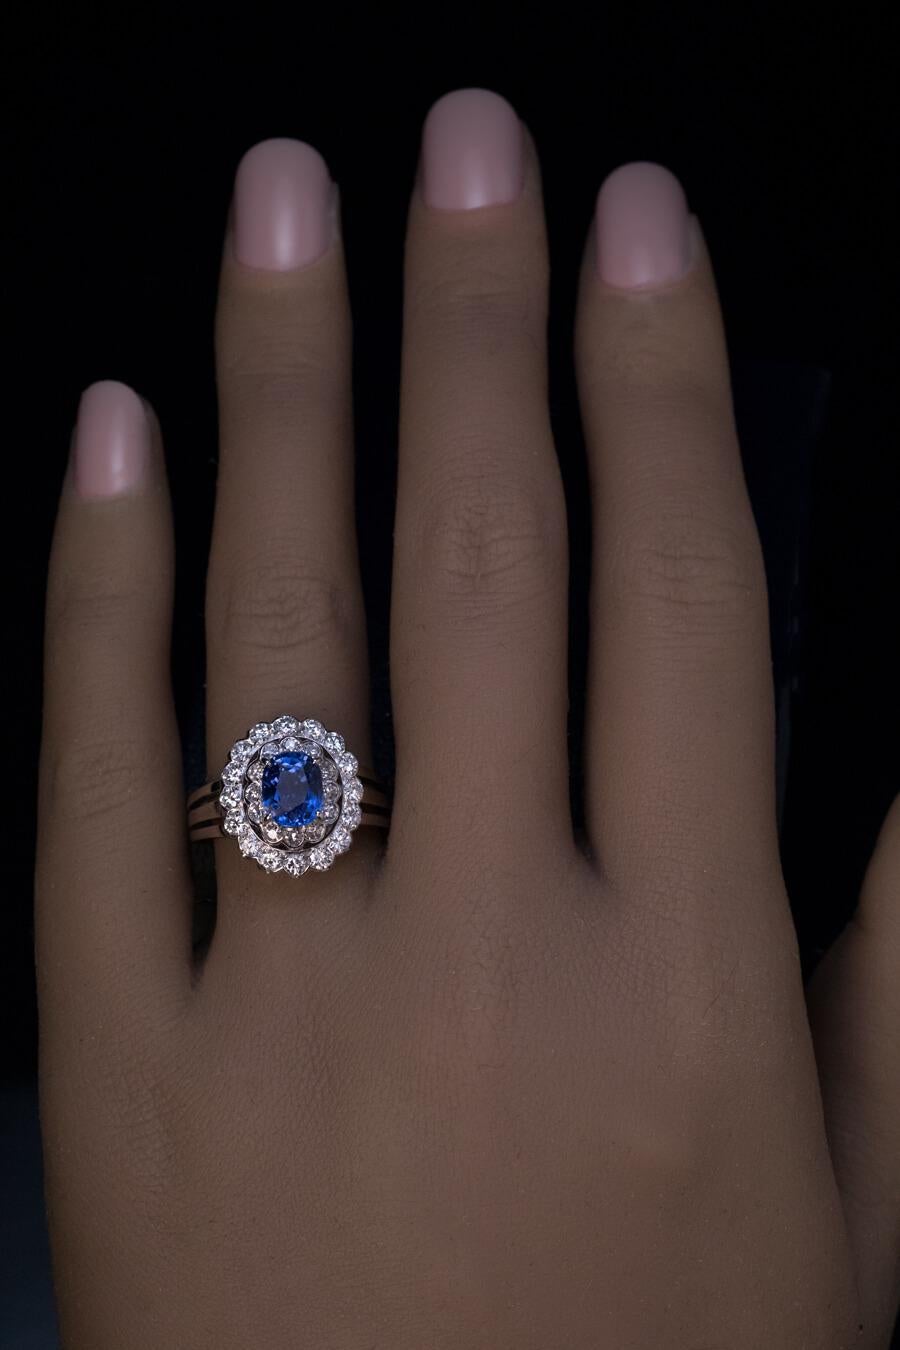 Circa 1950er Jahre  Der doppelte Halo-Ring ist aus 14 Karat Weißgold gefertigt. In der Mitte befindet sich ein leuchtend blauer Saphir (ca. 1,41 ct, wahrscheinlich aus Ceylon), eingerahmt von einer Reihe von Diamanten im Einzelschliff (Farbe G-H,